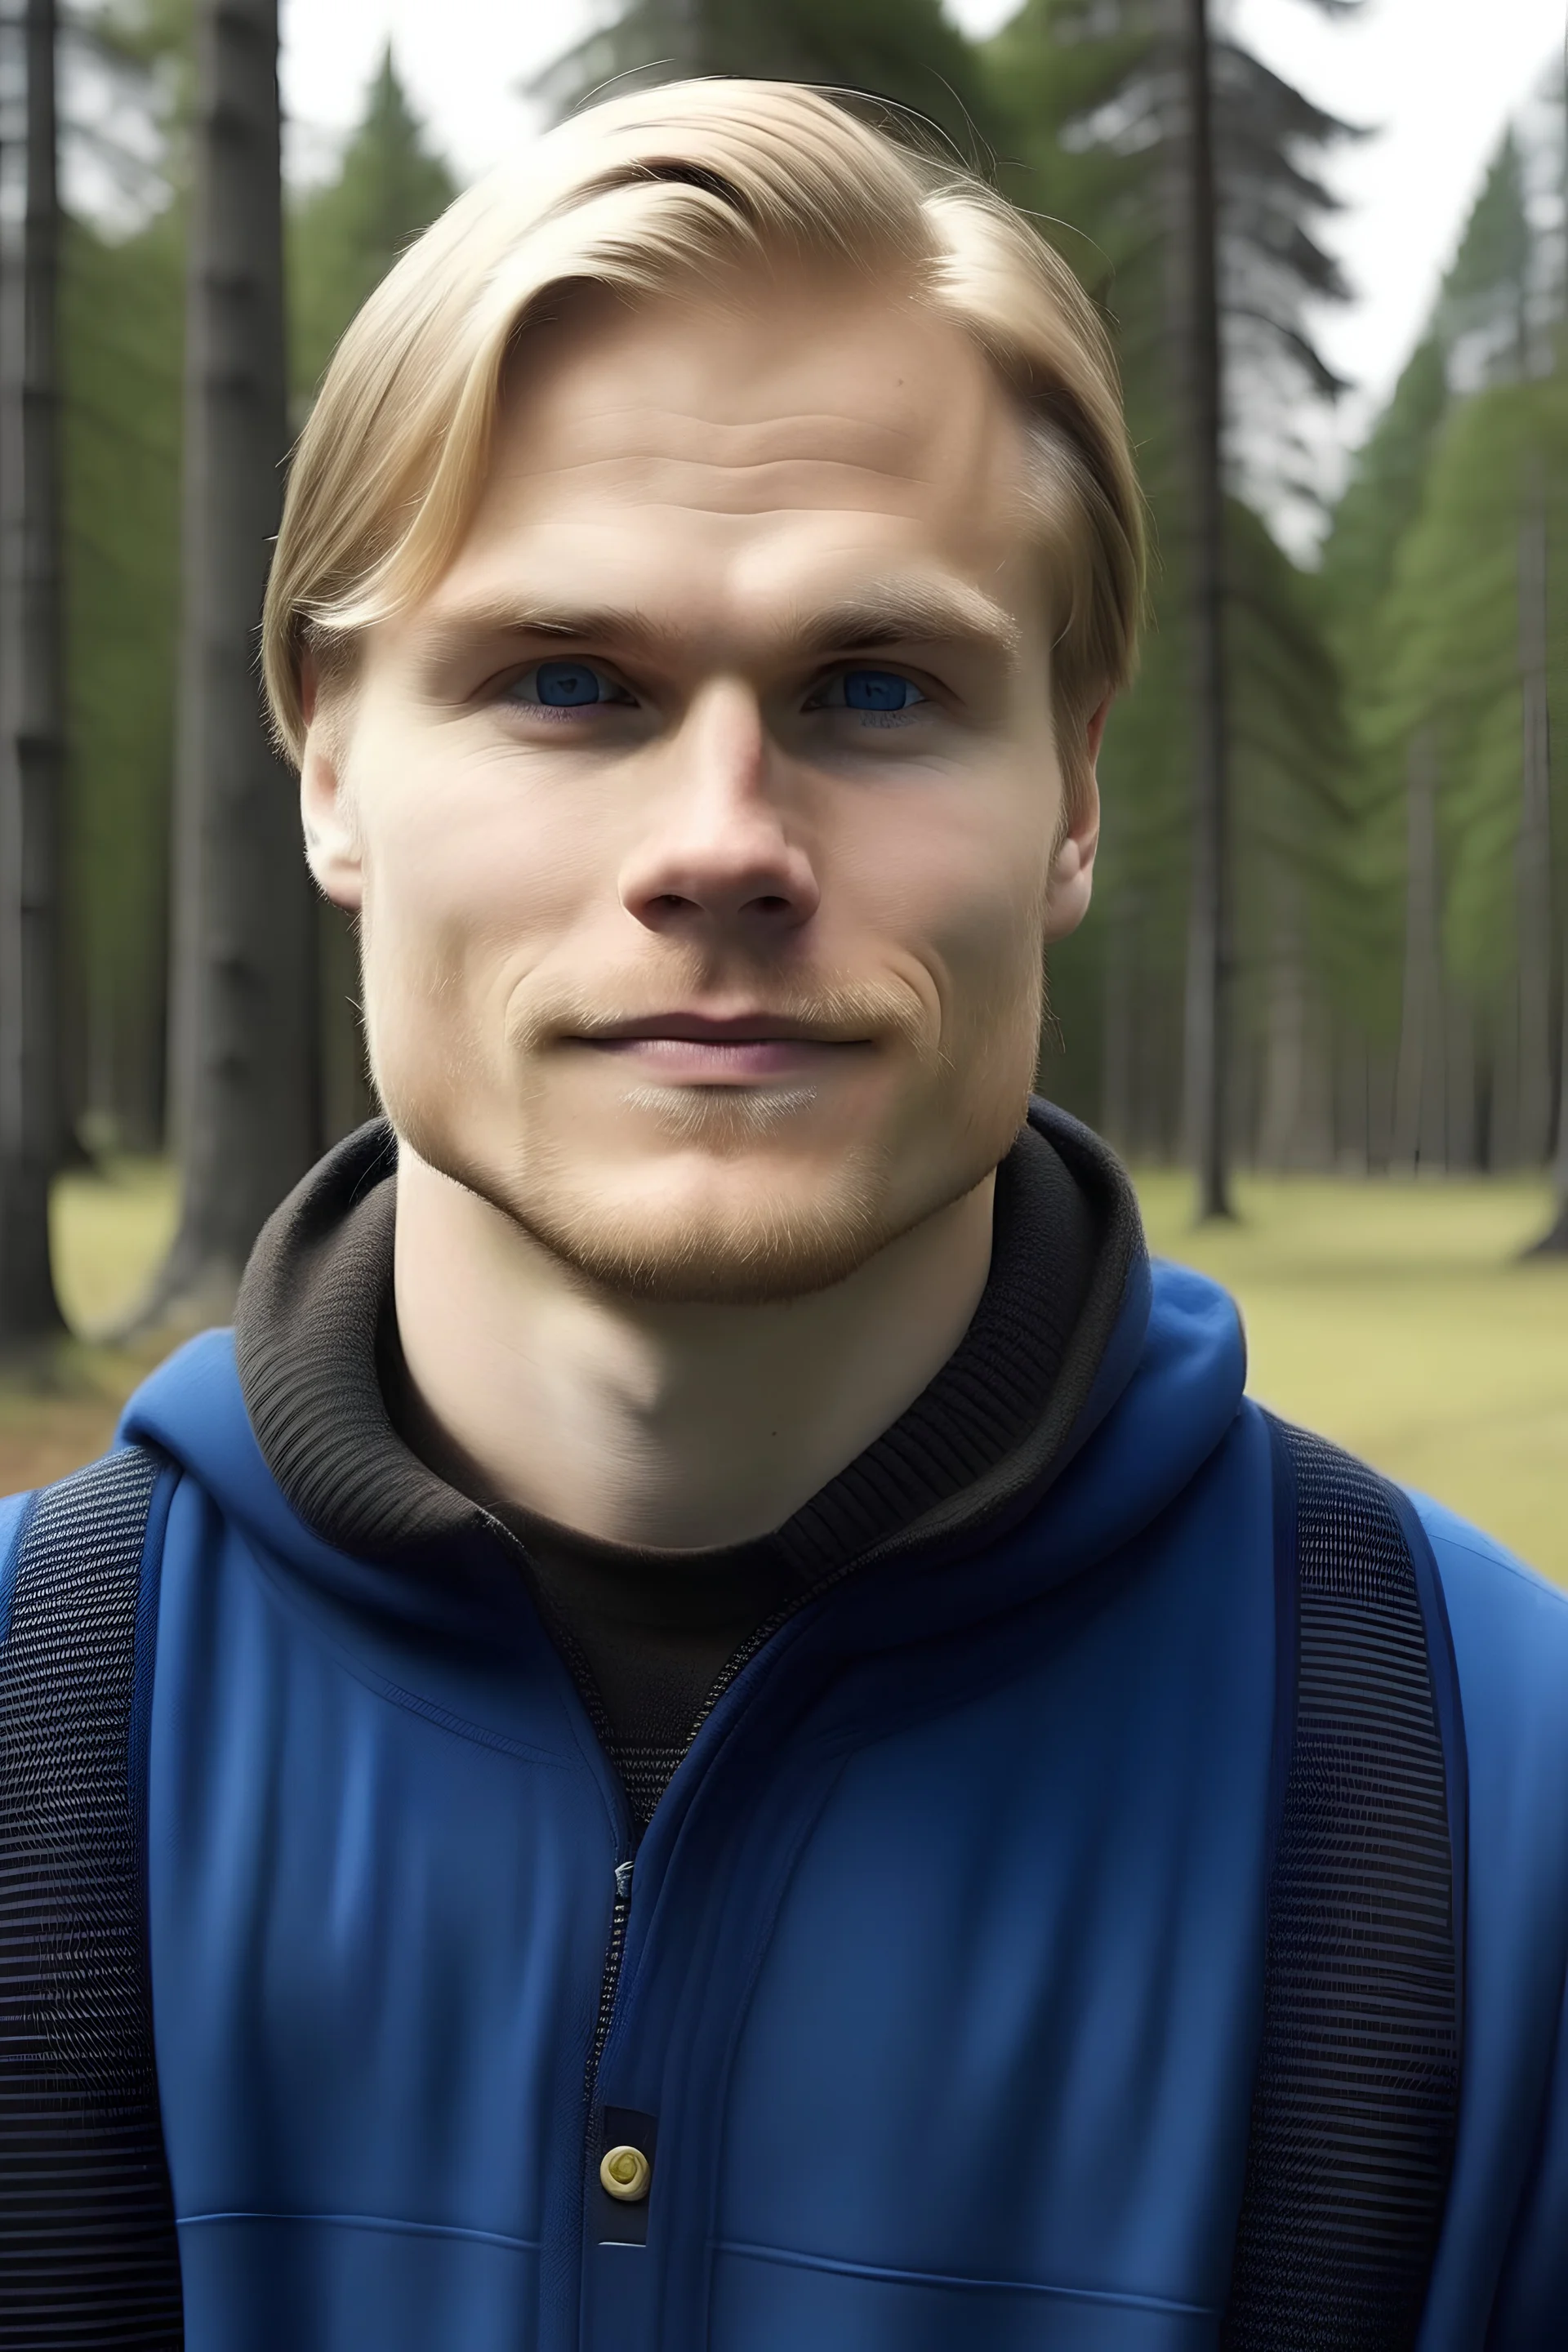 Handsome Finnish man